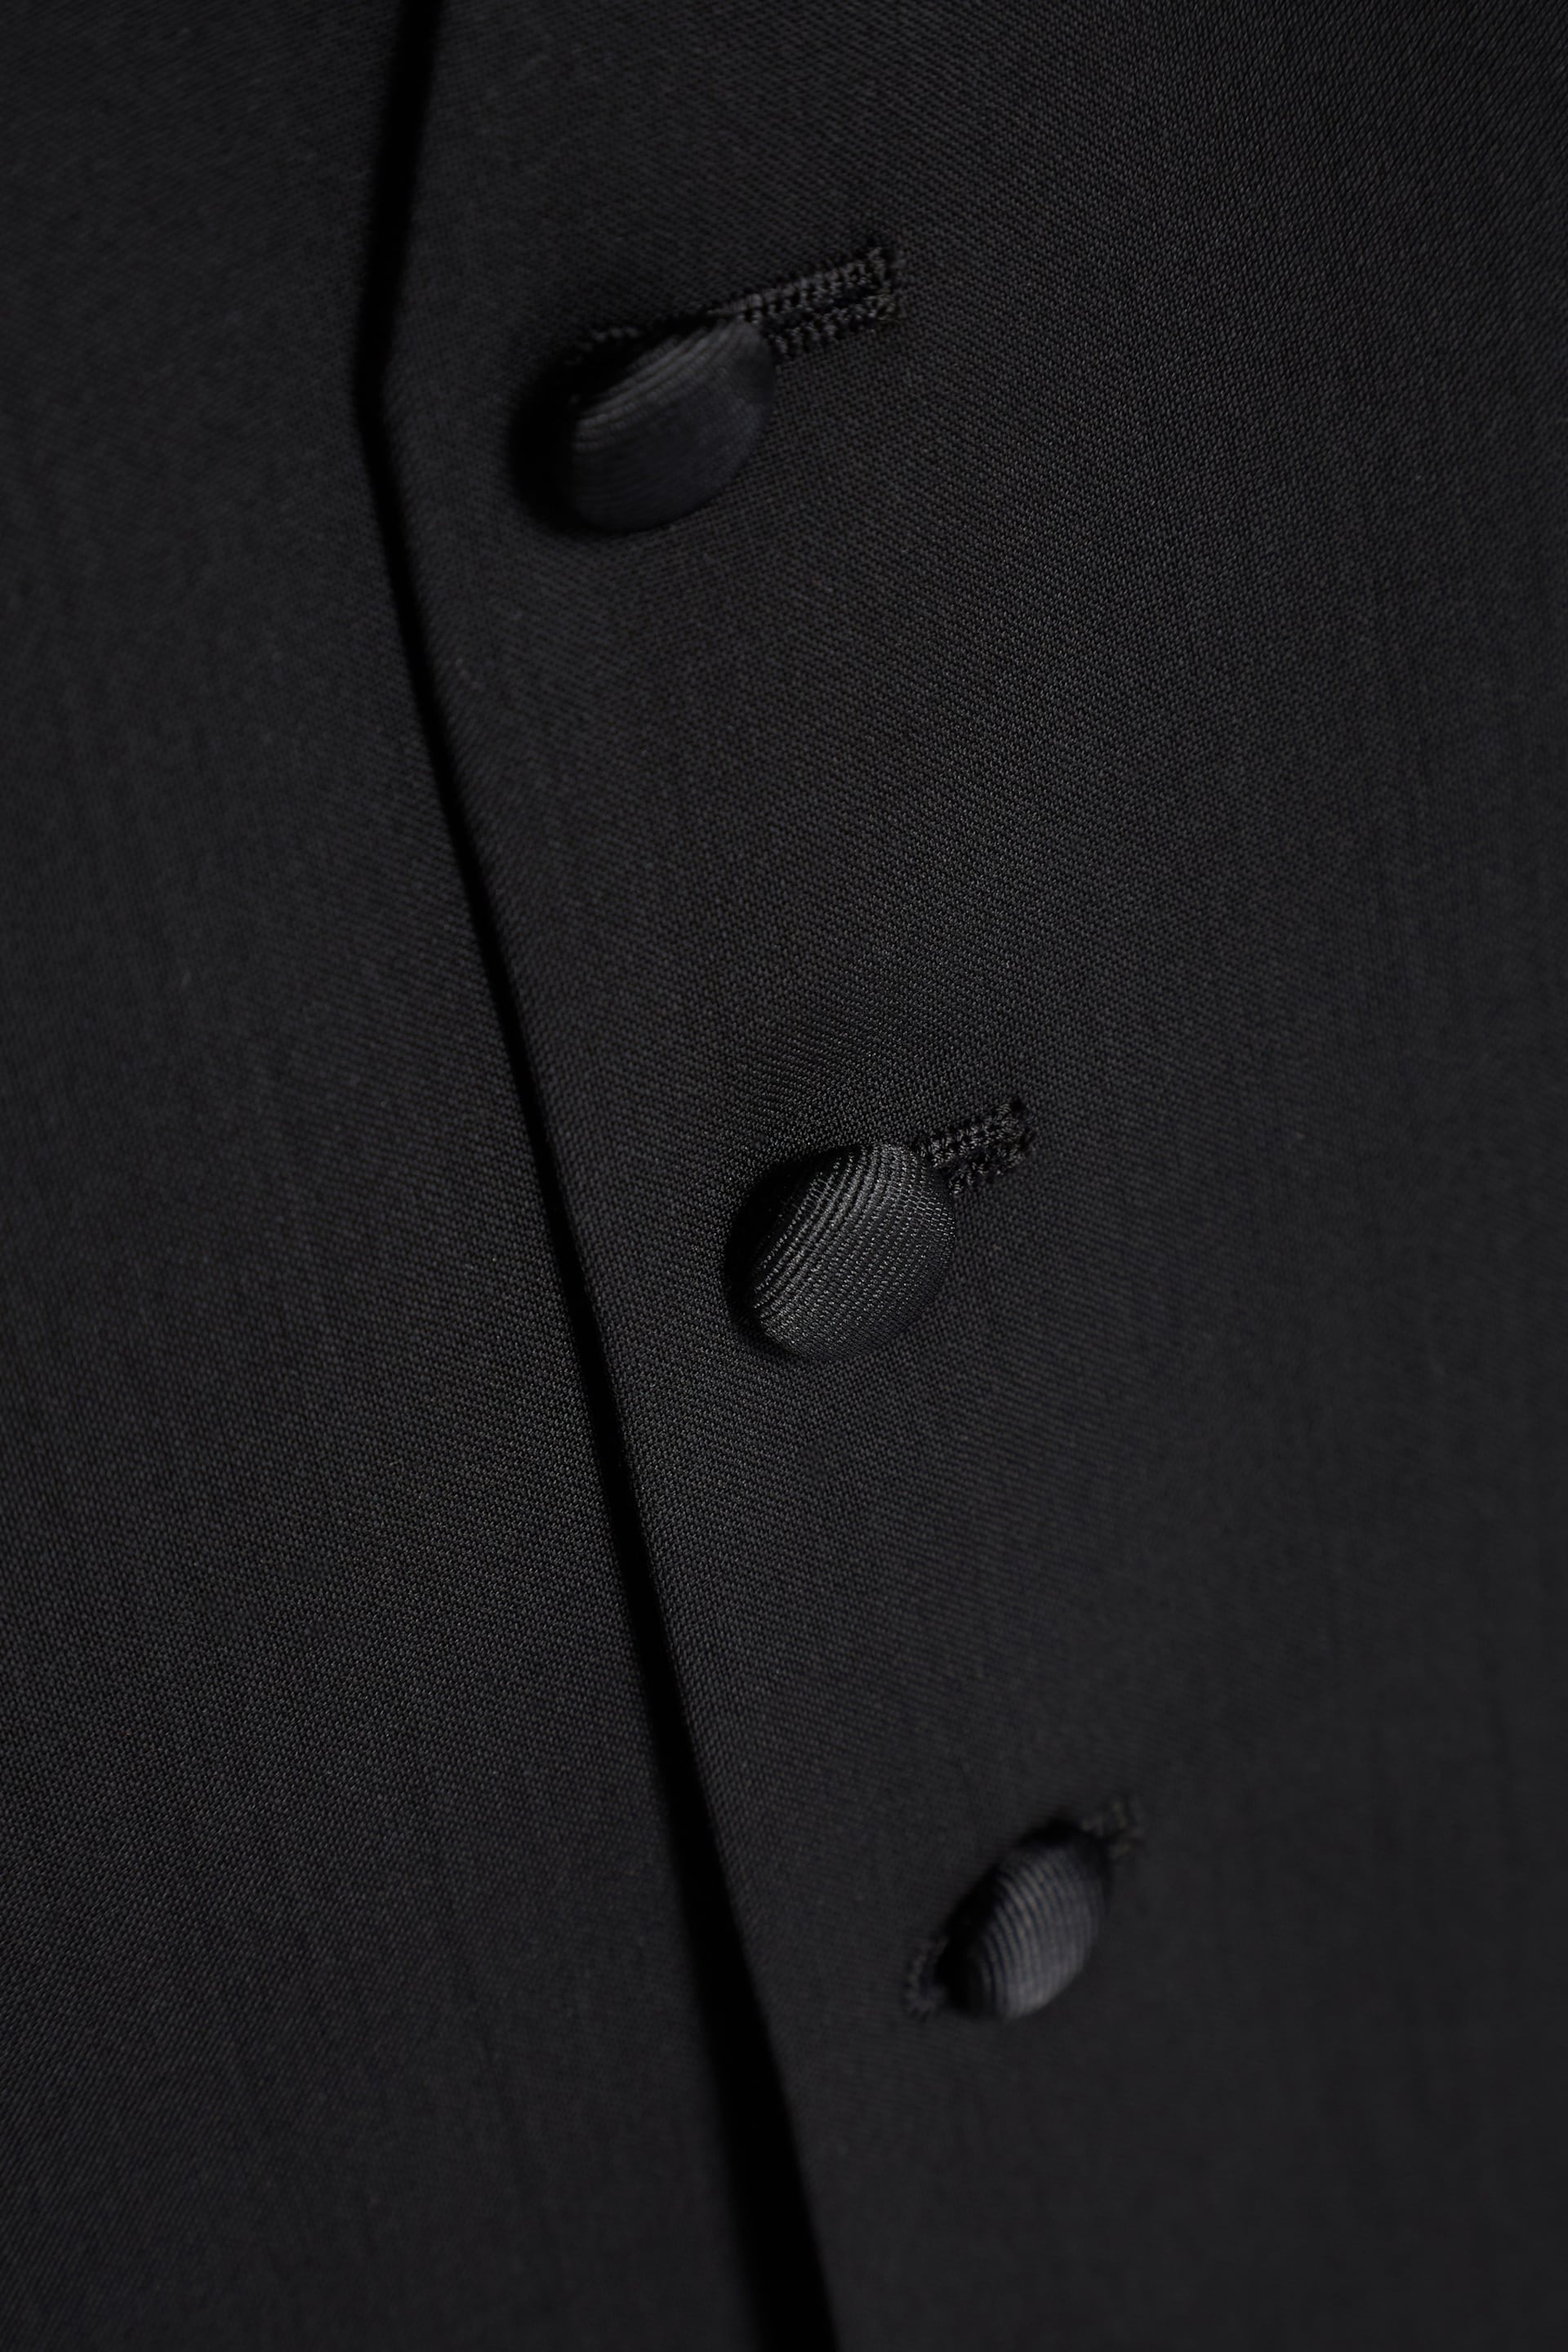 Black Signature Tollegno Wool Suit Waistcoat - Image 7 of 7